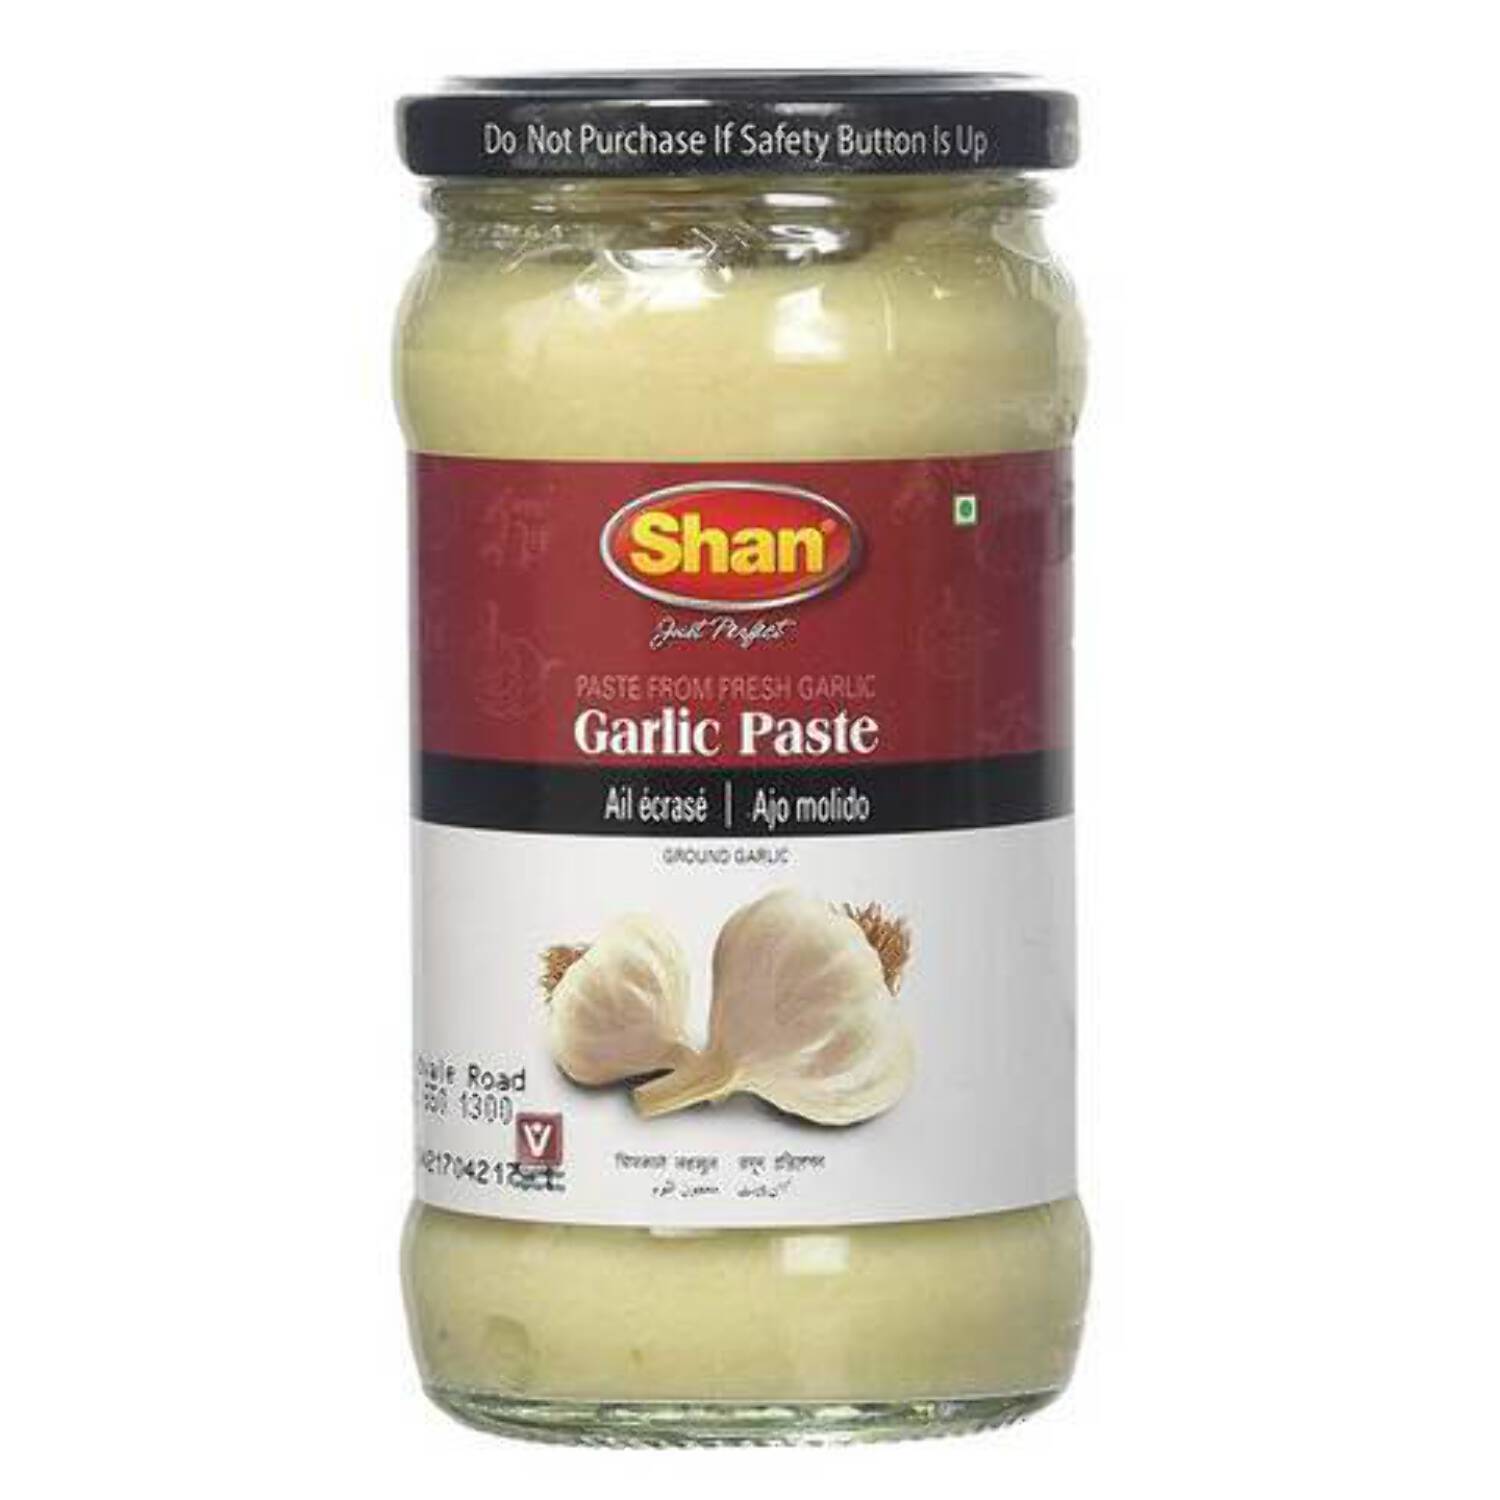 Shan Garlic Paste 310g (10.93oz) (Pack of 4) - image 1 of 2